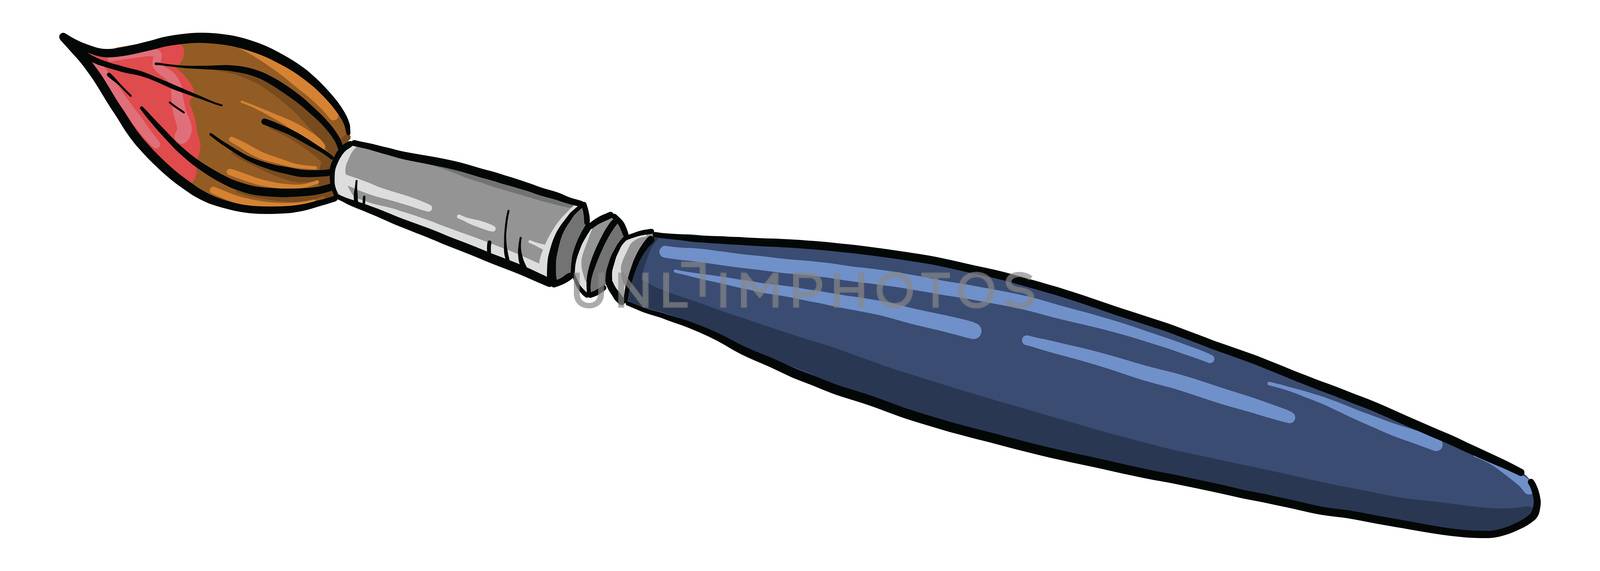 Blue brush , illustration, vector on white background by Morphart